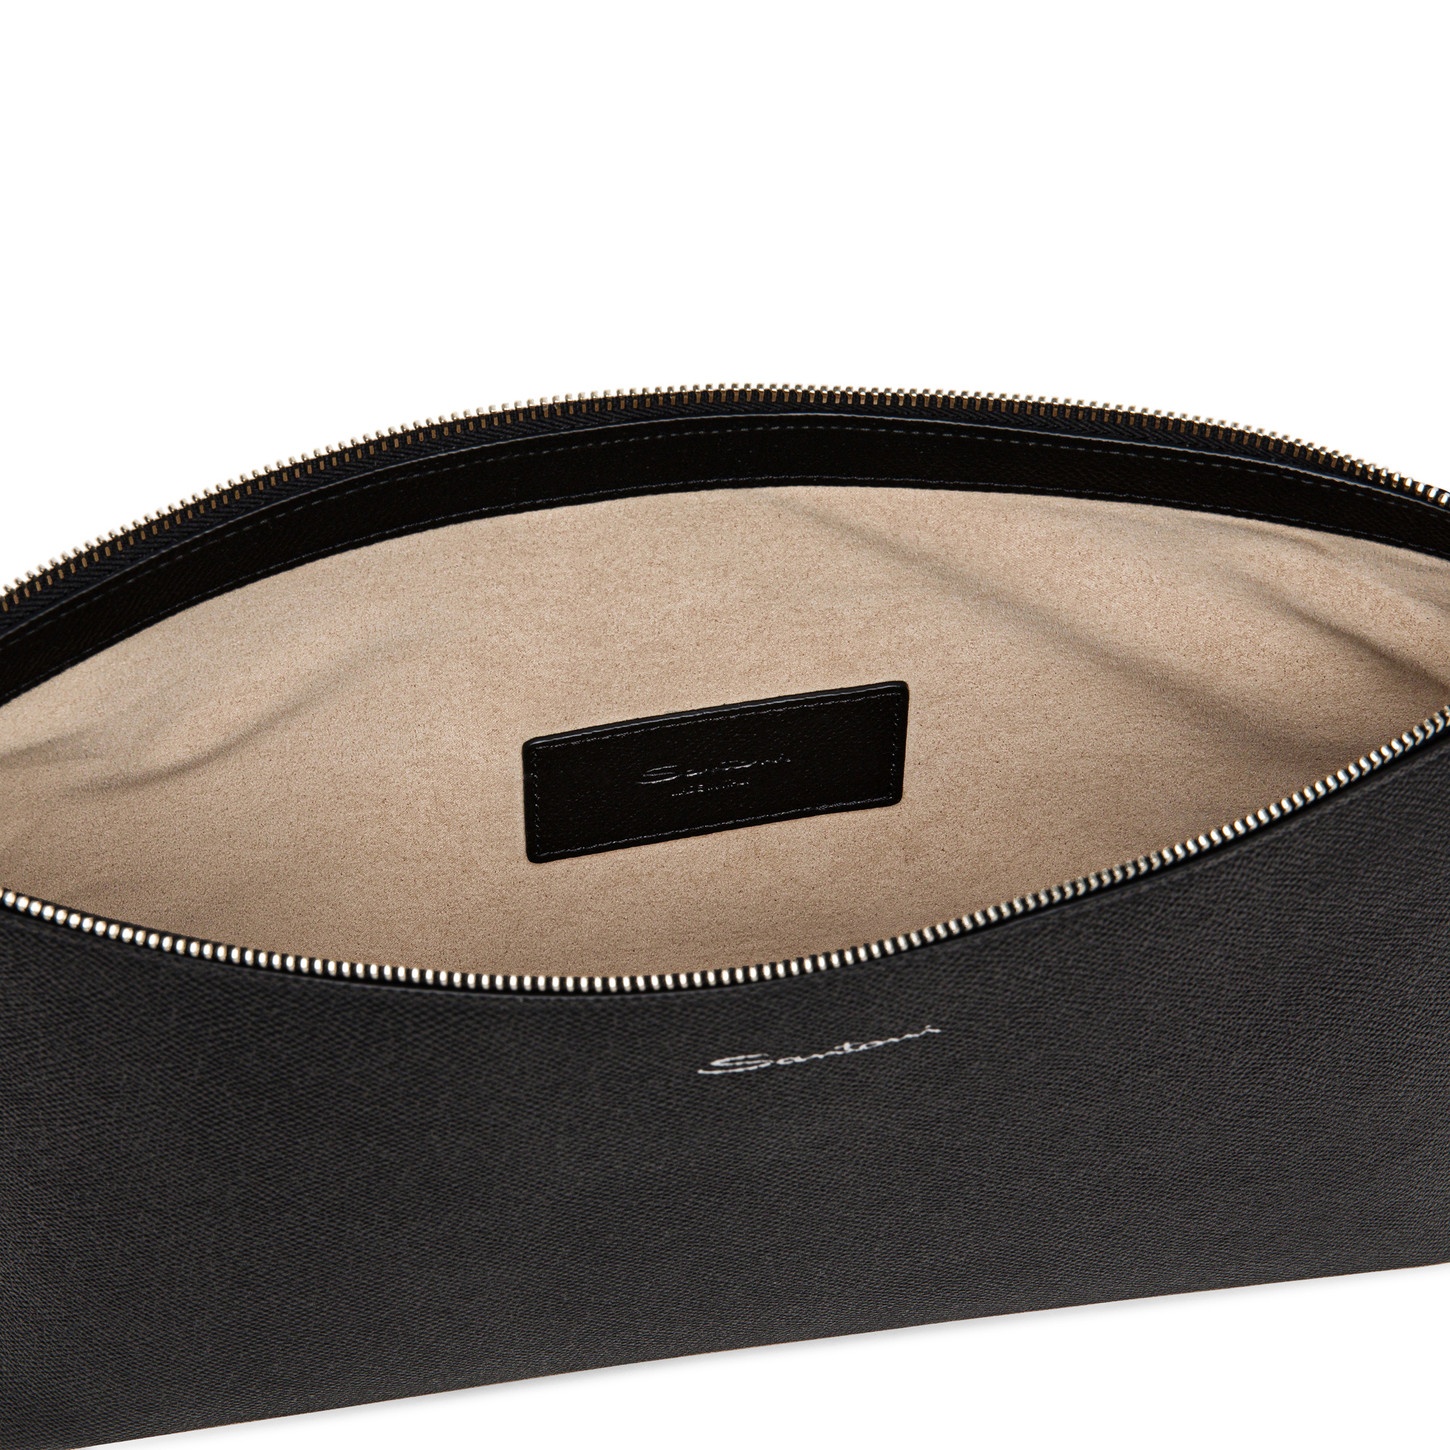 Black saffiano leather pouch - 3